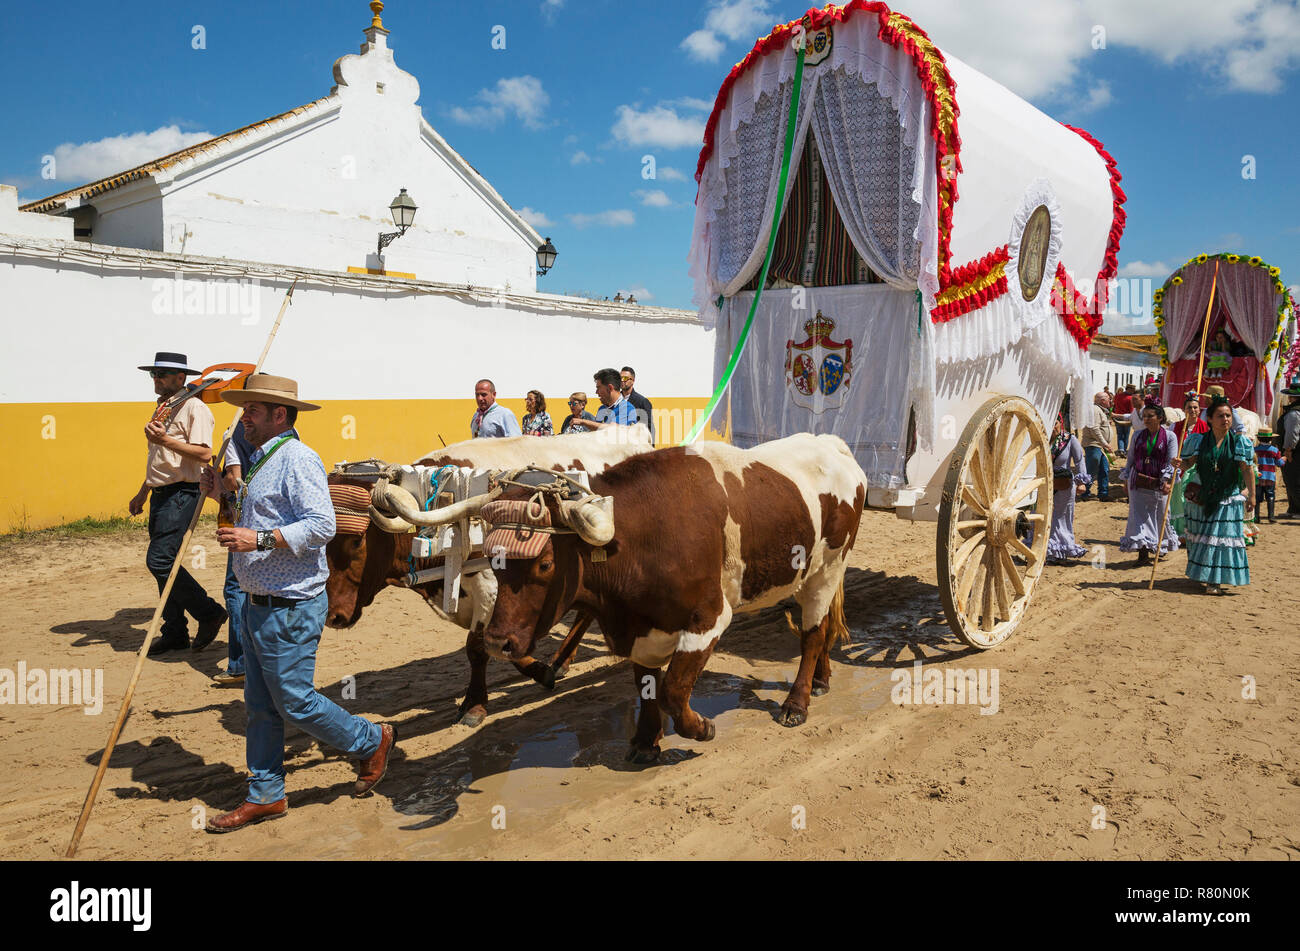 Au cours d'un célèbre pèlerinage de la Pentecôte le village d'El Rocio se transforme en un spectacle coloré magnifiquement décorée avec des charrettes à bœufs, les hommes et les femmes portant des robes gitanes couleur magnifiquement. La province de Huelva, Andalousie, espagne. Banque D'Images